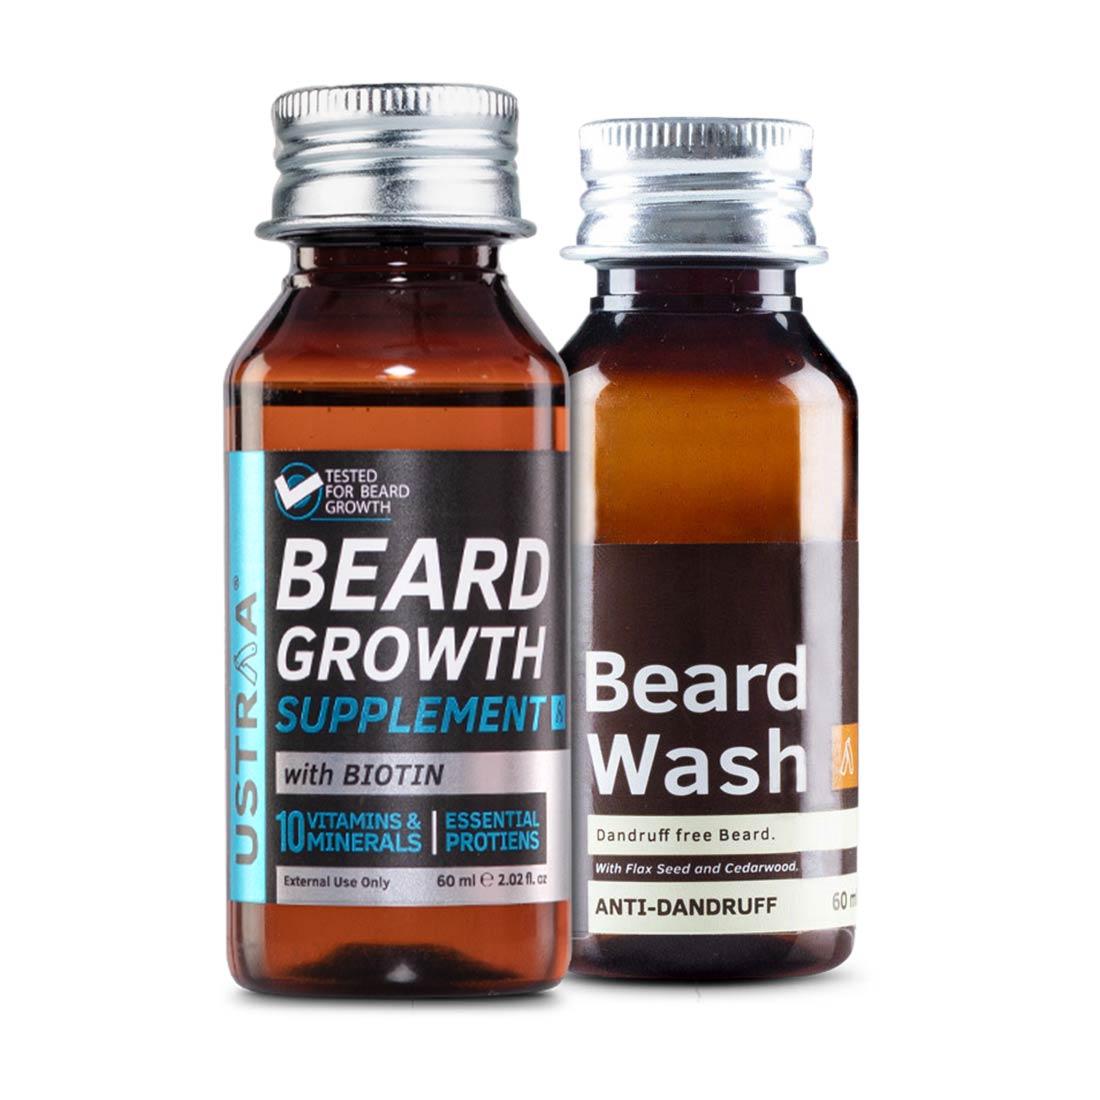 Beard Growth Supplement & Beard Wash Anti-Dandruff